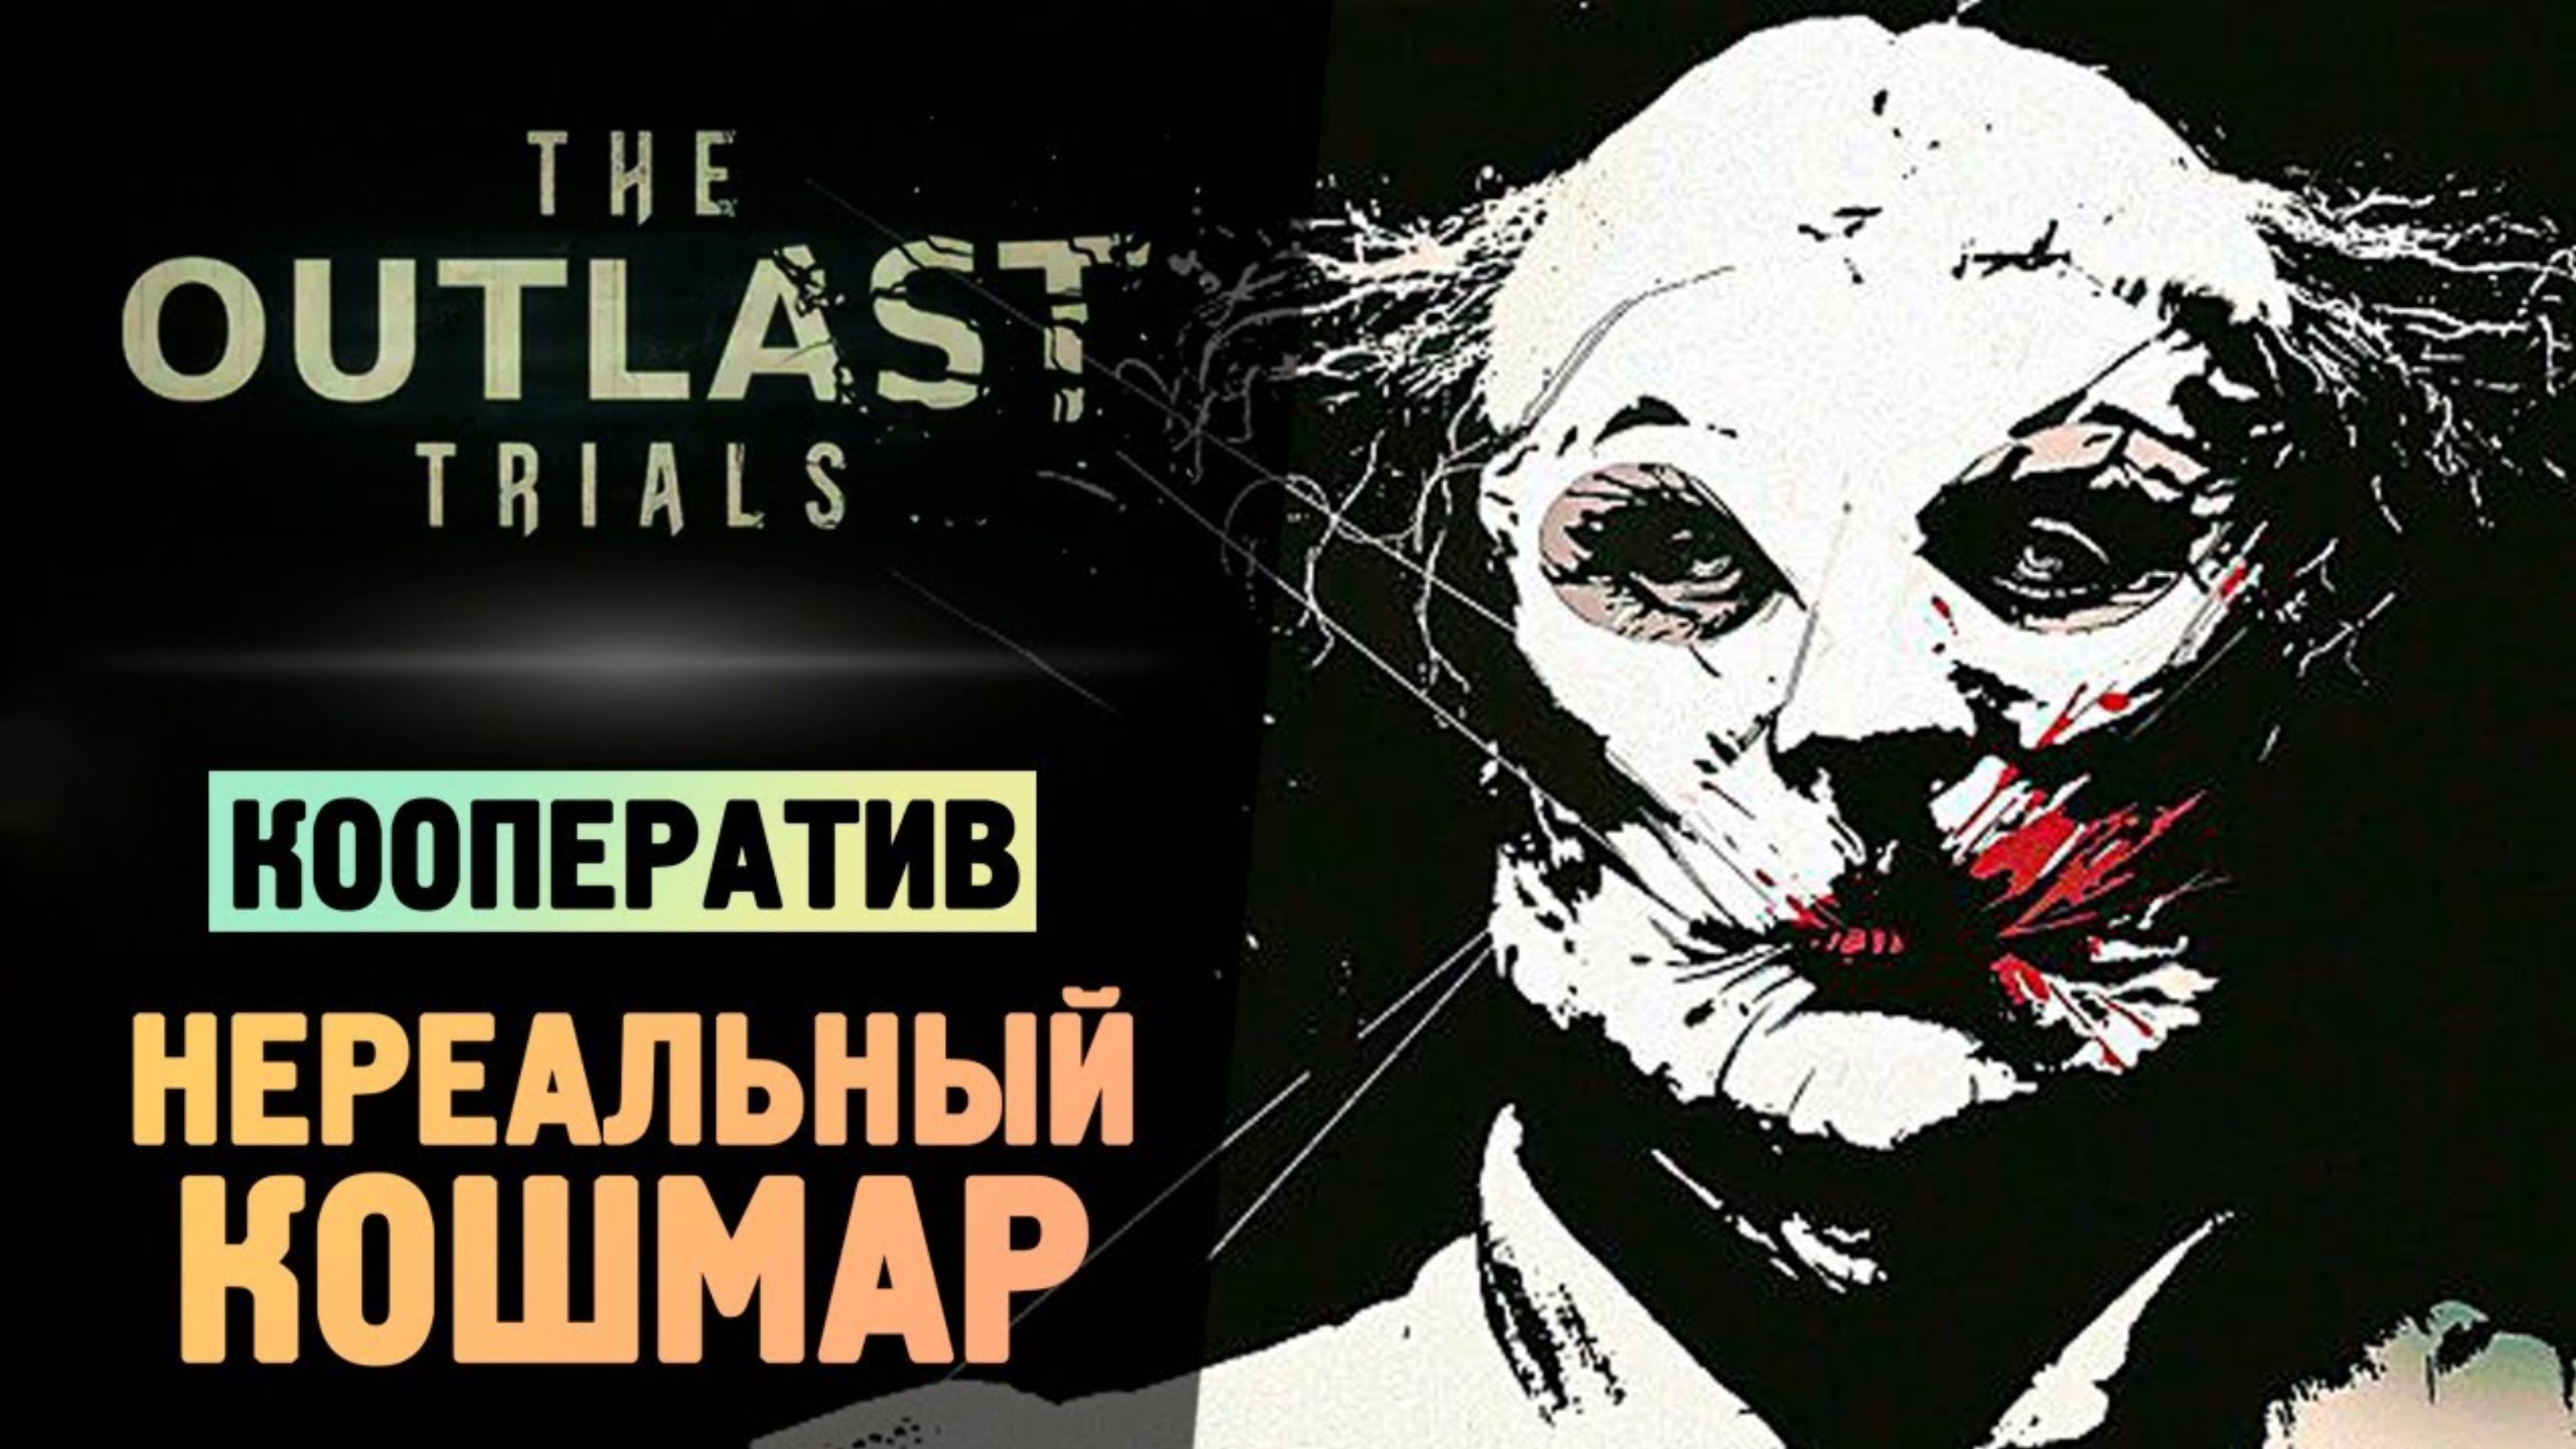 НЕРЕАЛЬНЫЙ КОШМАР В АУТЛАСТ 3 - The Outlast Trials